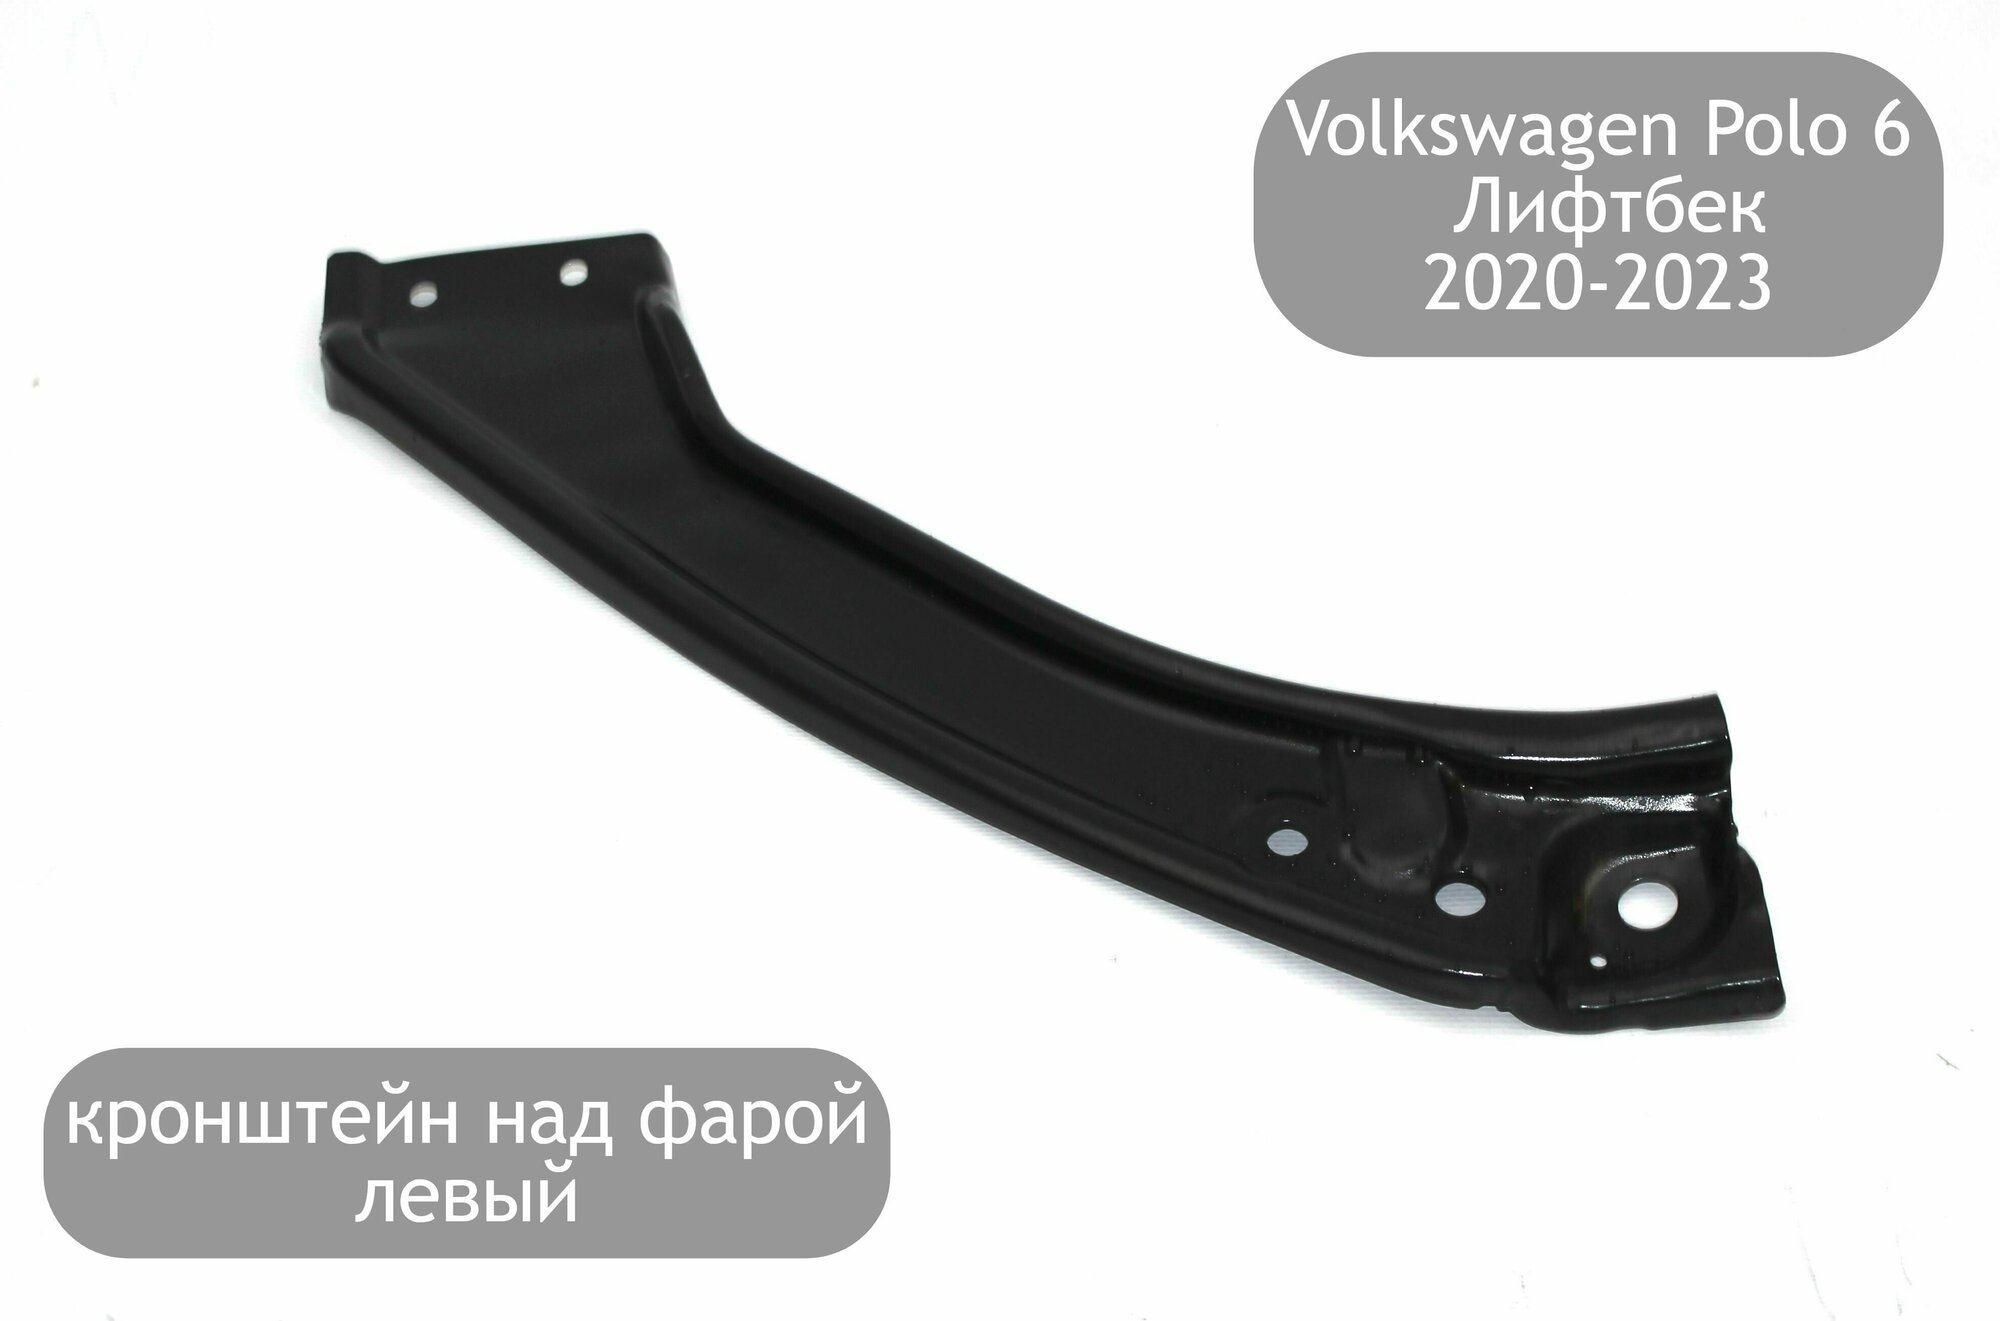 Крепление над фарой левое для Volkswagen Polo 6 Лифтбек 2020-2023